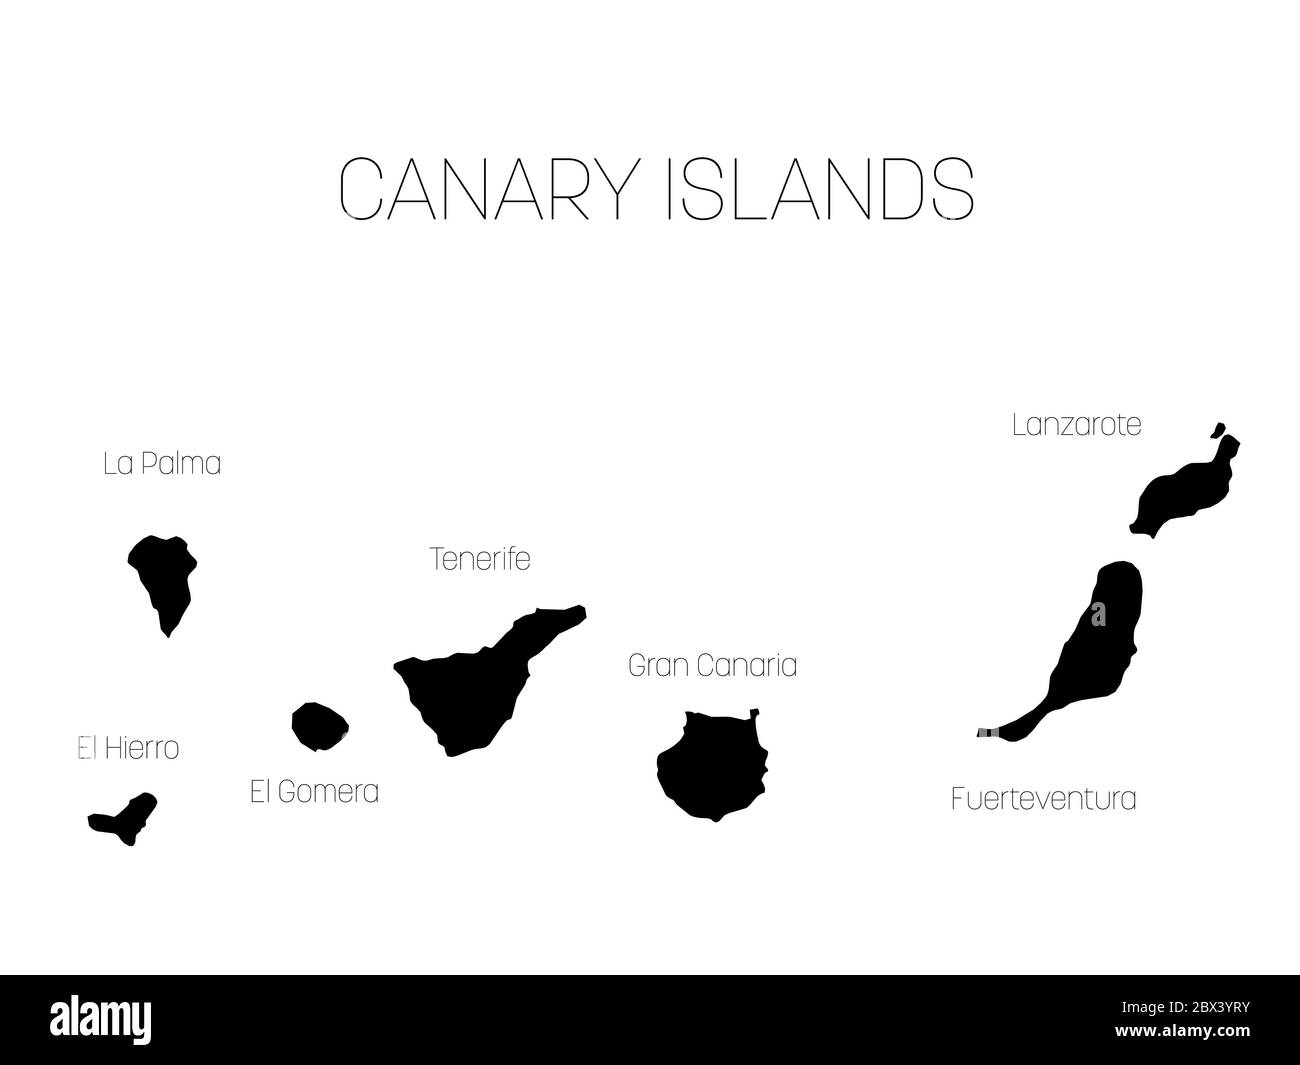 Mapa de Canarias, España, con etiquetas de cada isla - el Hierro, la Palma,  la Gomera, Tenerife, Gran Canaria, Fuerteventura y Lanzarote. Silueta  vectorial negra sobre fondo blanco Imagen Vector de stock -